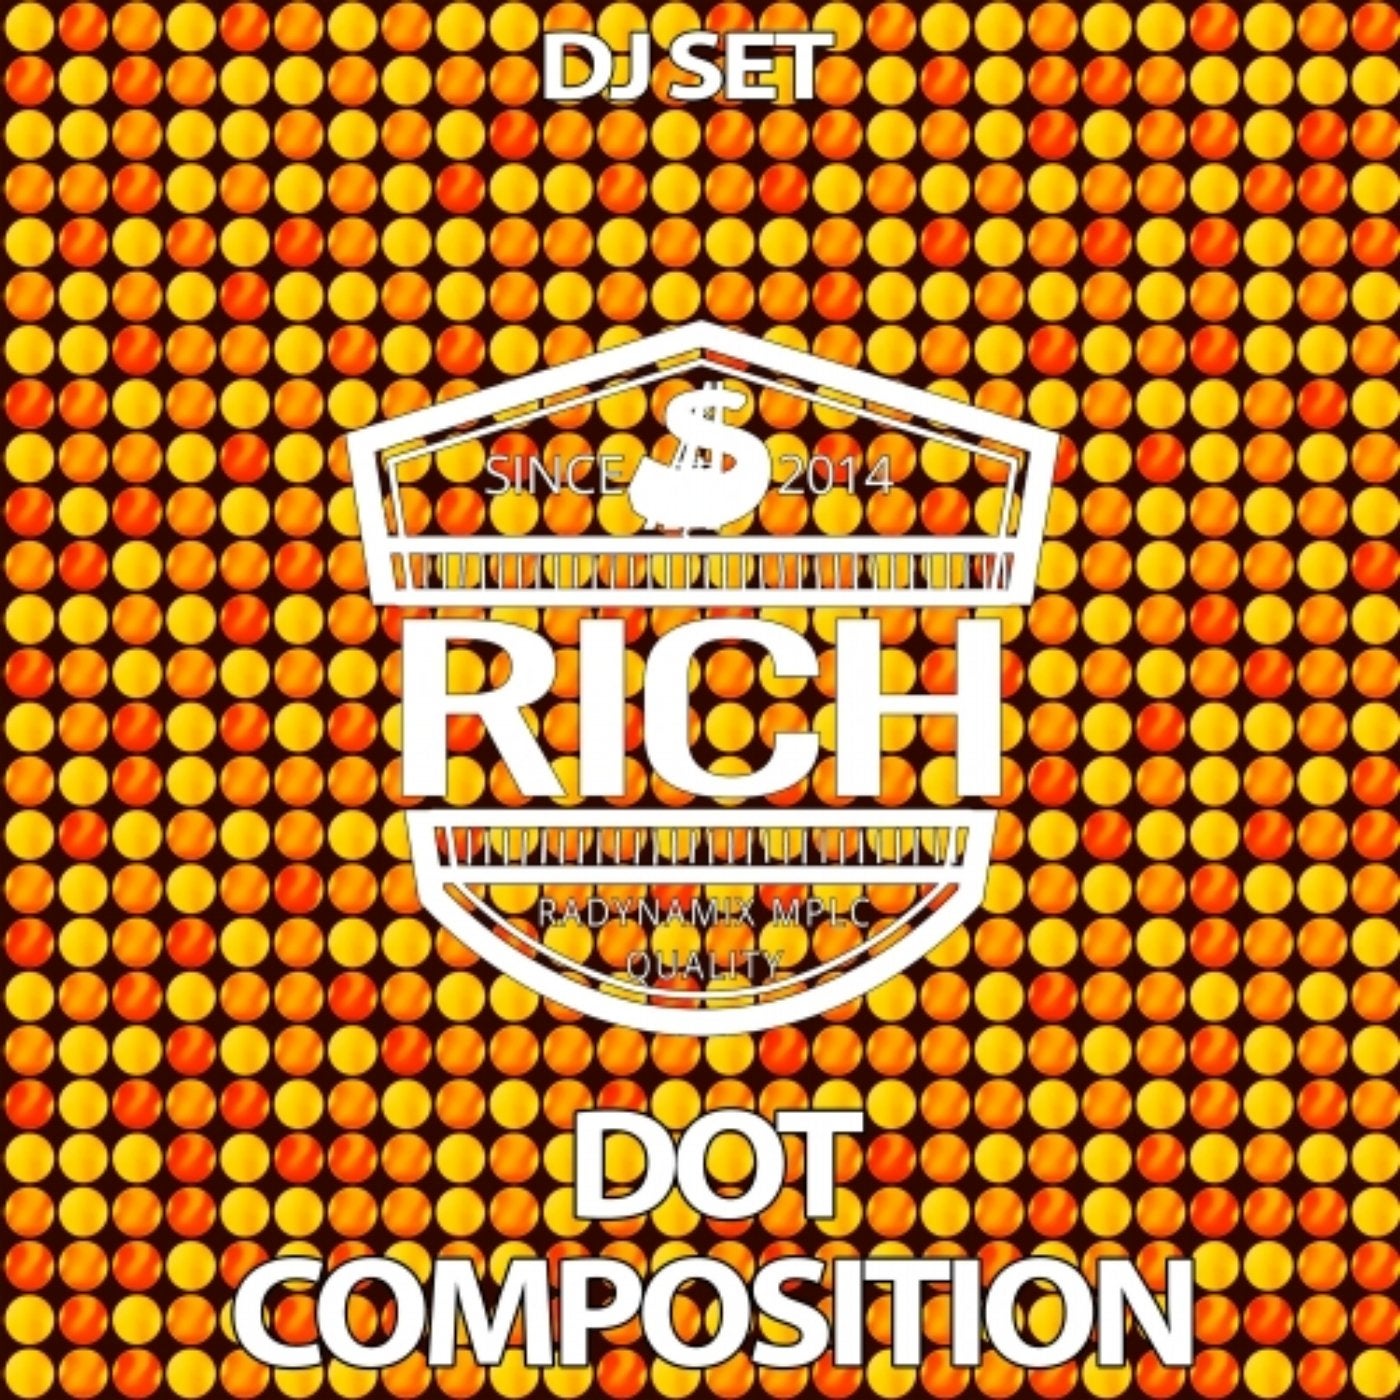 Dot Composition